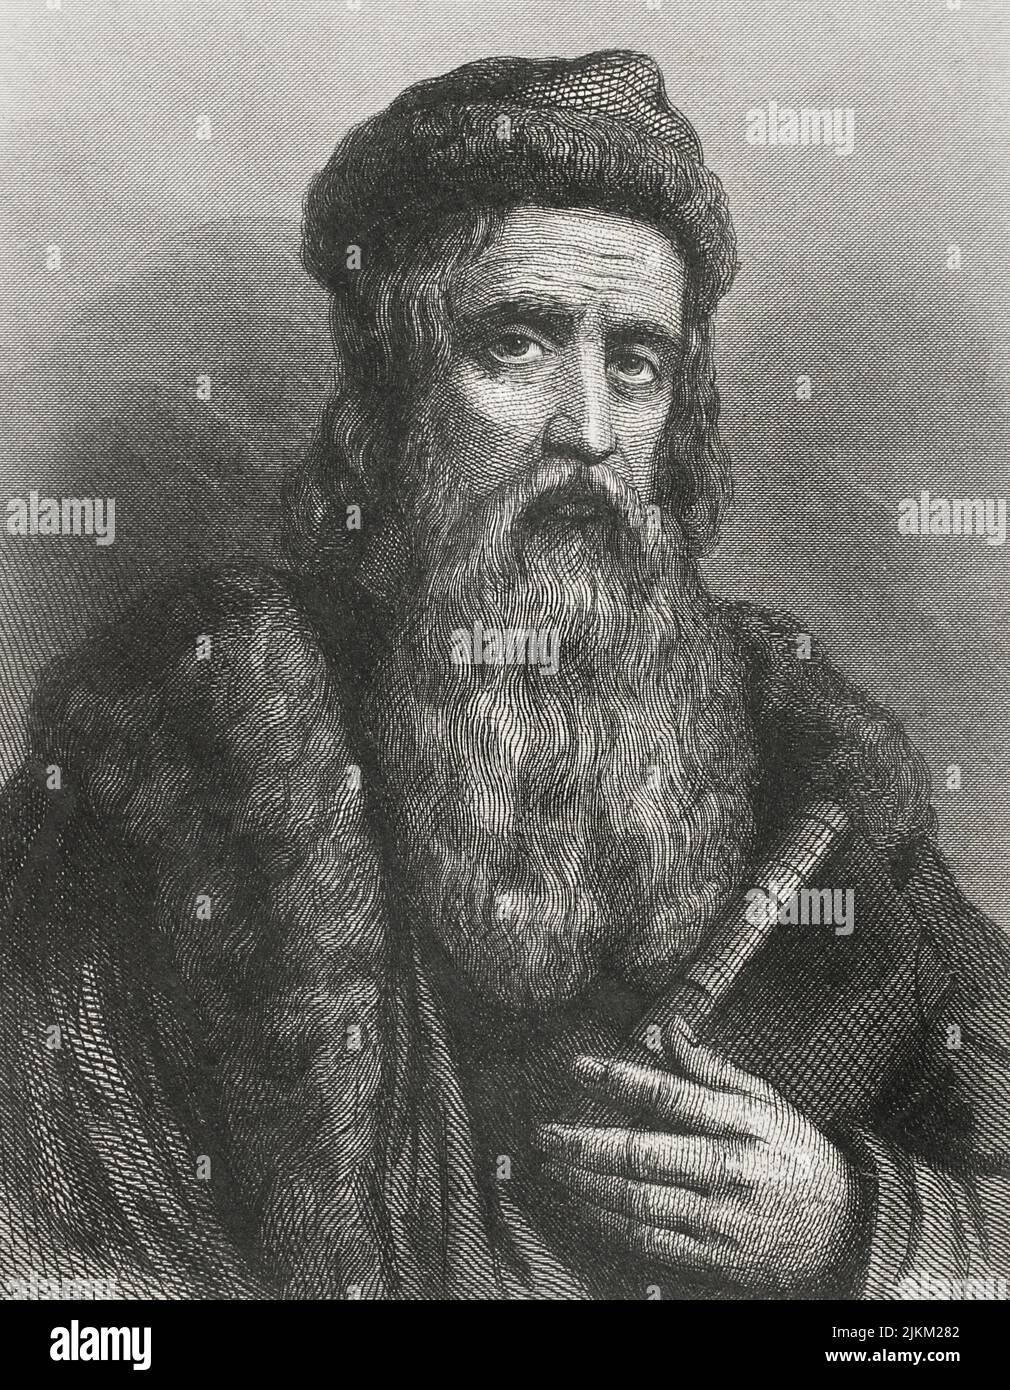 Johannes Gutenberg (ca. 1399-1468). Inventor alemán. Alrededor de 1450 creó la primera imprenta de tipo móvil. Vertical. Grabado por Geoffroy. 'Historia Universal', de César Cantú. Volumen IV, 1856. Foto de stock